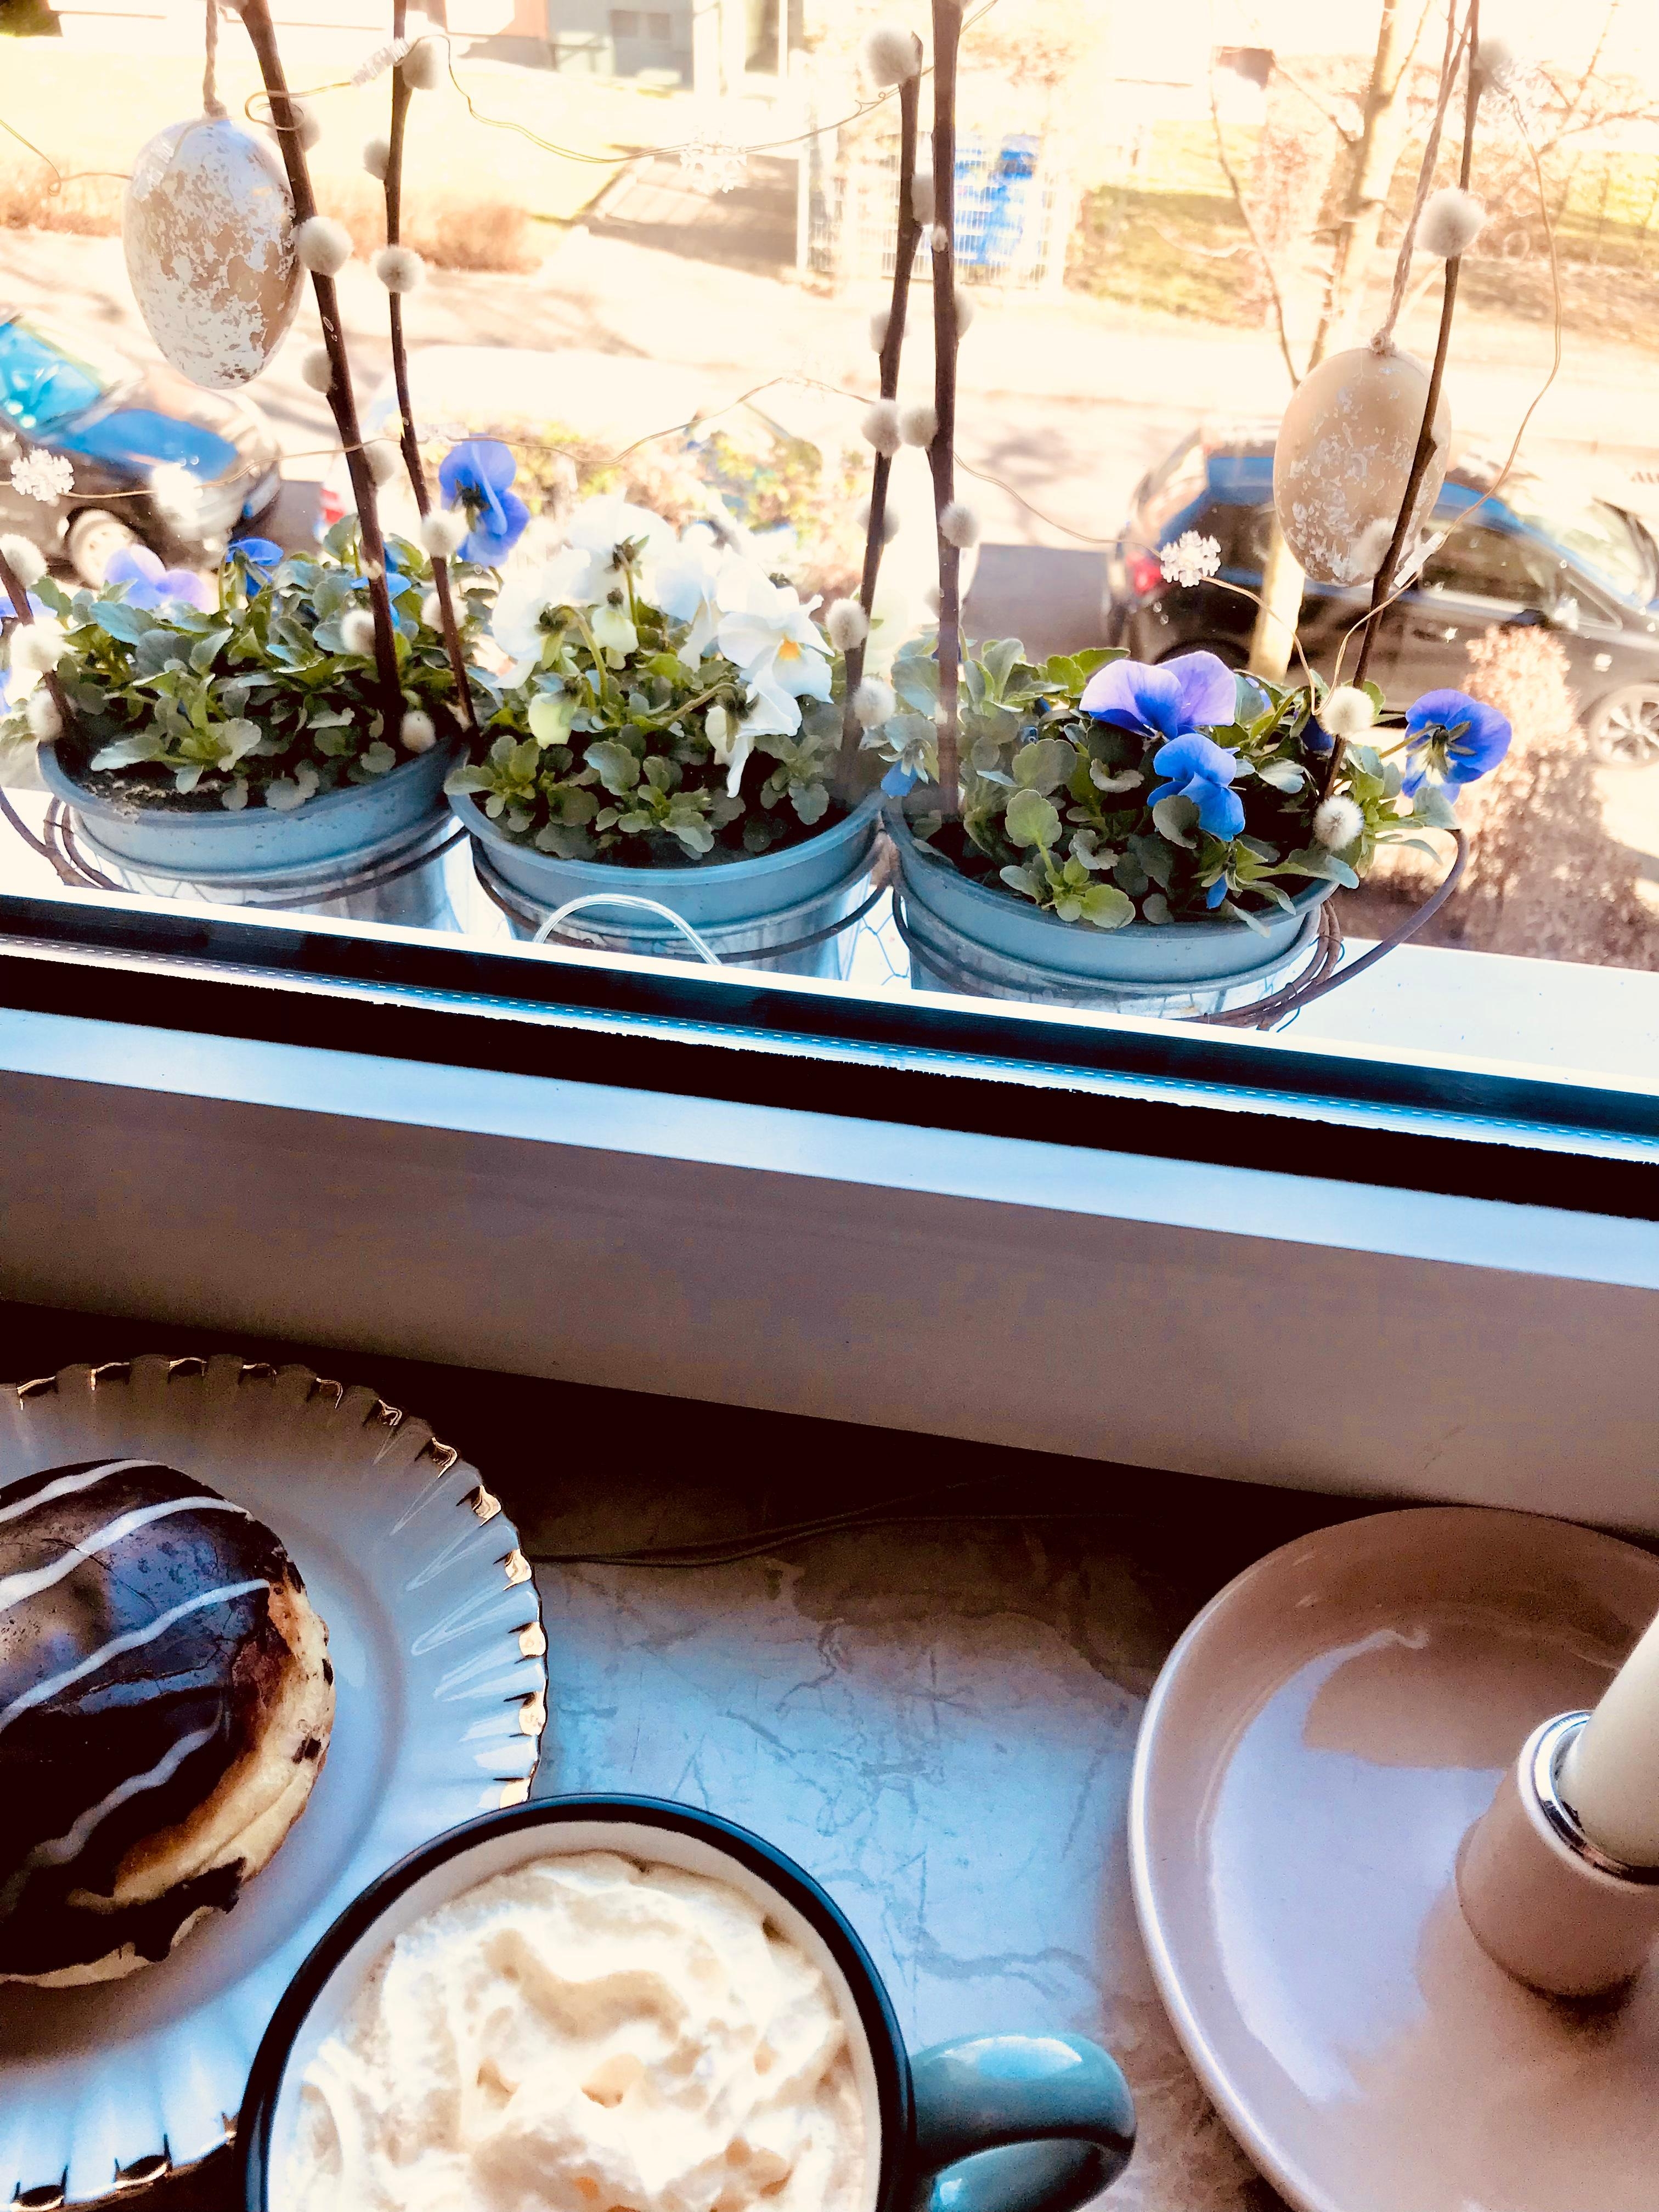 Frühling auf der Fensterbank 🌿
#flower #ostereier
 #fensterdeko #home 
#küche #cafe #happy 